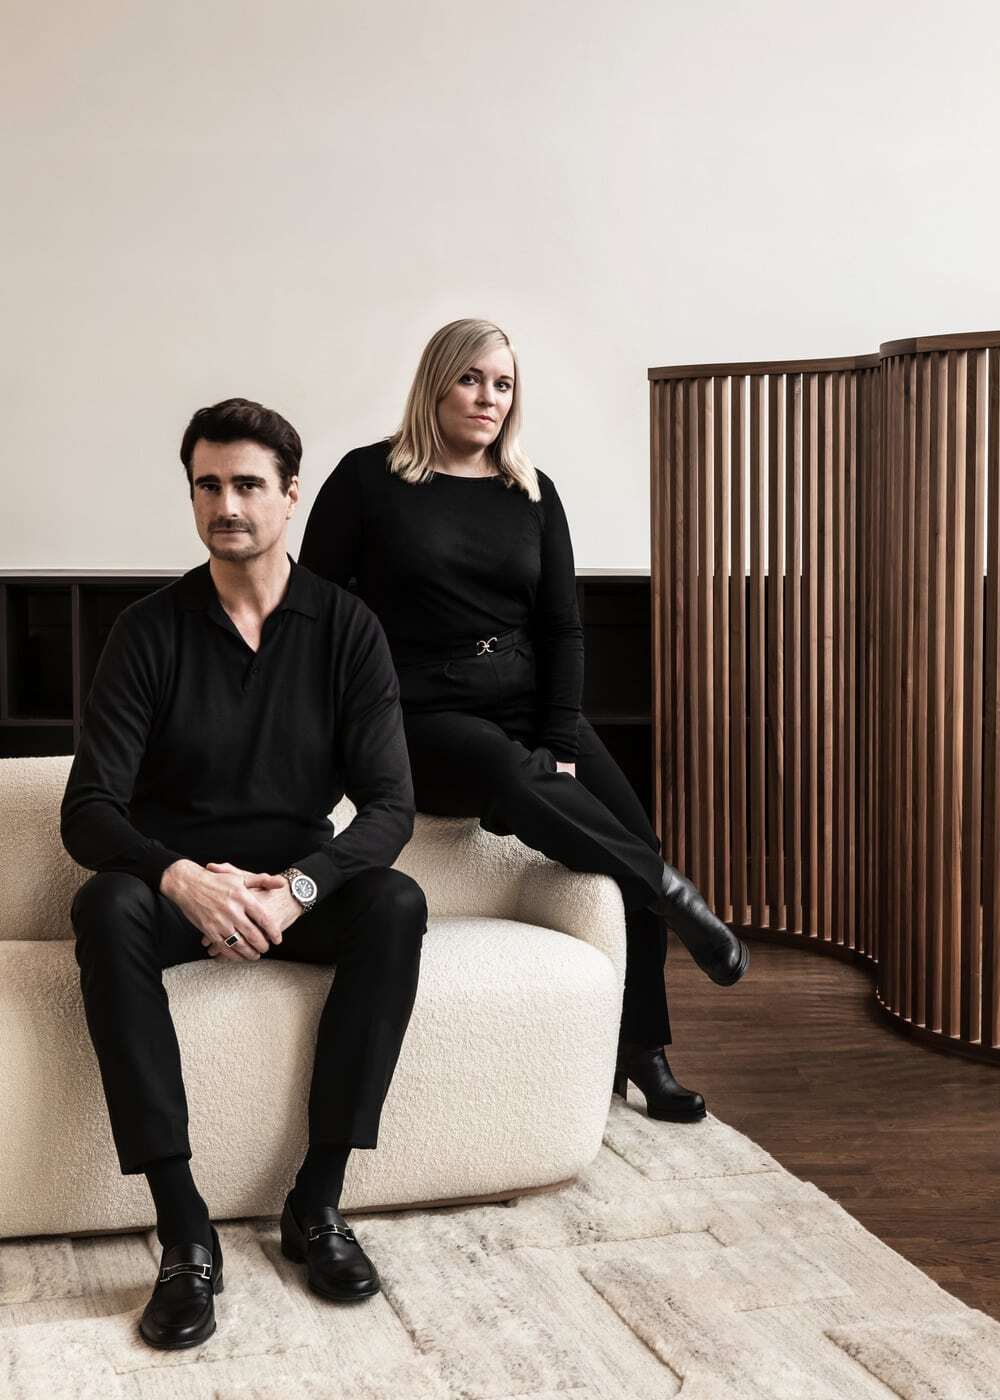 interior stylist Caroline Sandström and photographer Mike Karlsson Lundgren